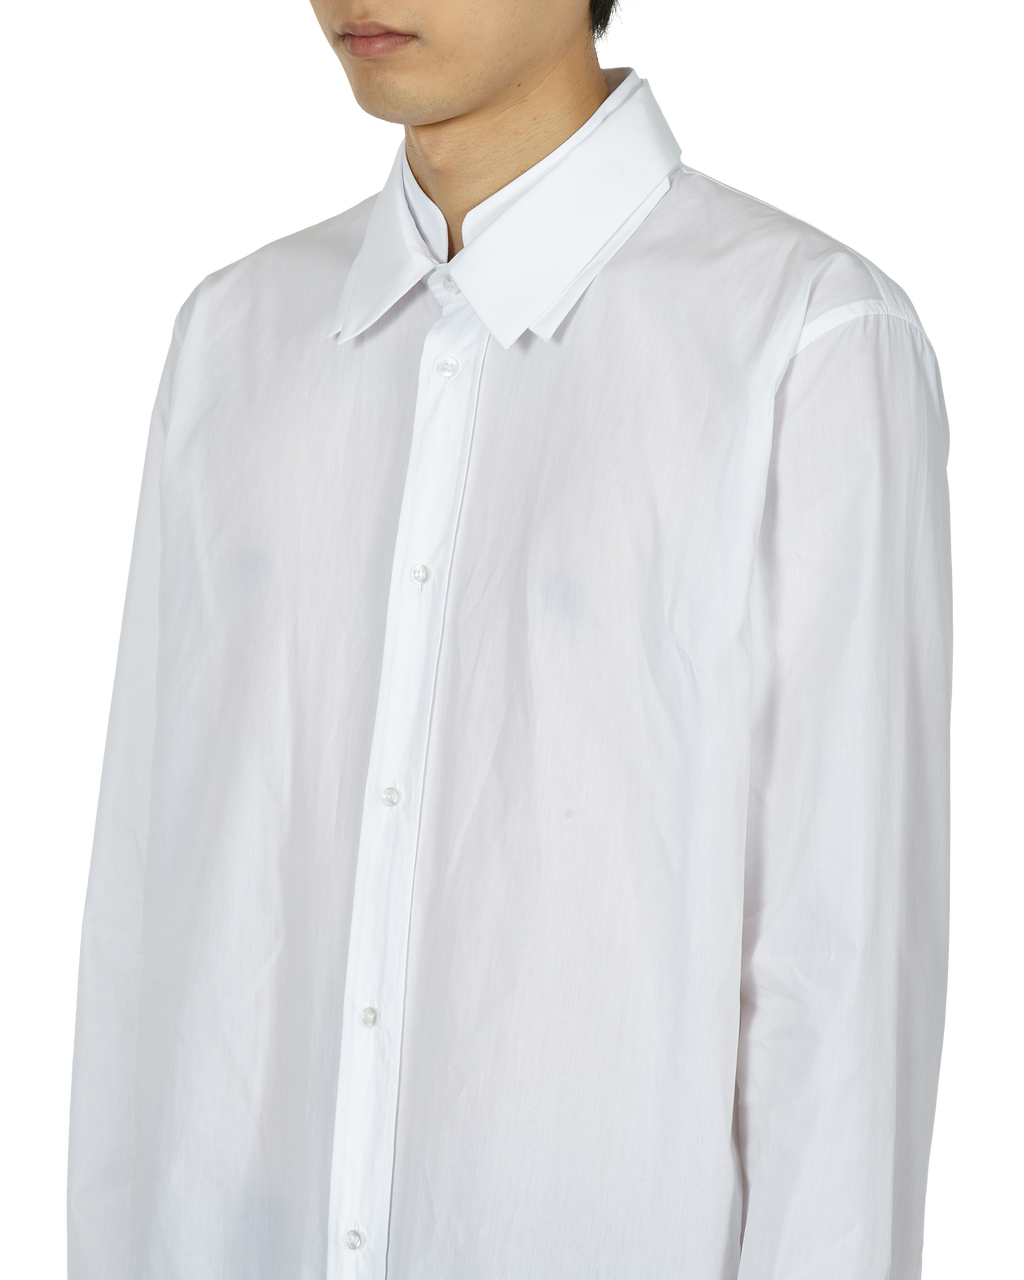 _J.L - A.L_ Triple Collar Shirt J278598-XL-White 2